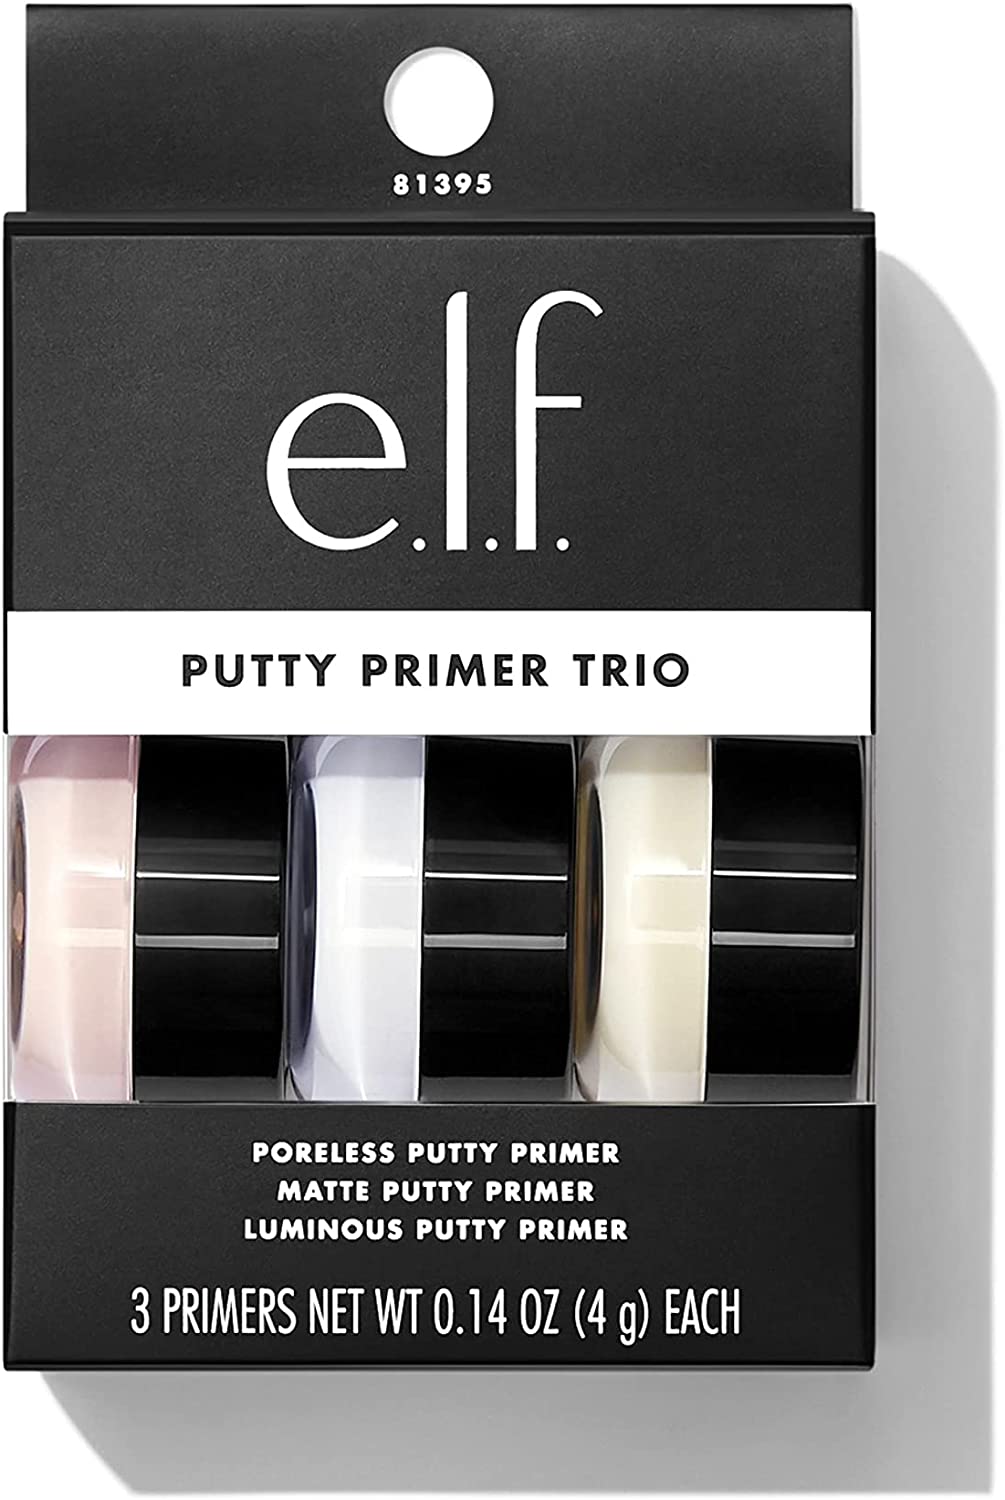 e.l.f. Putty Primer Trio with 3 putty primers